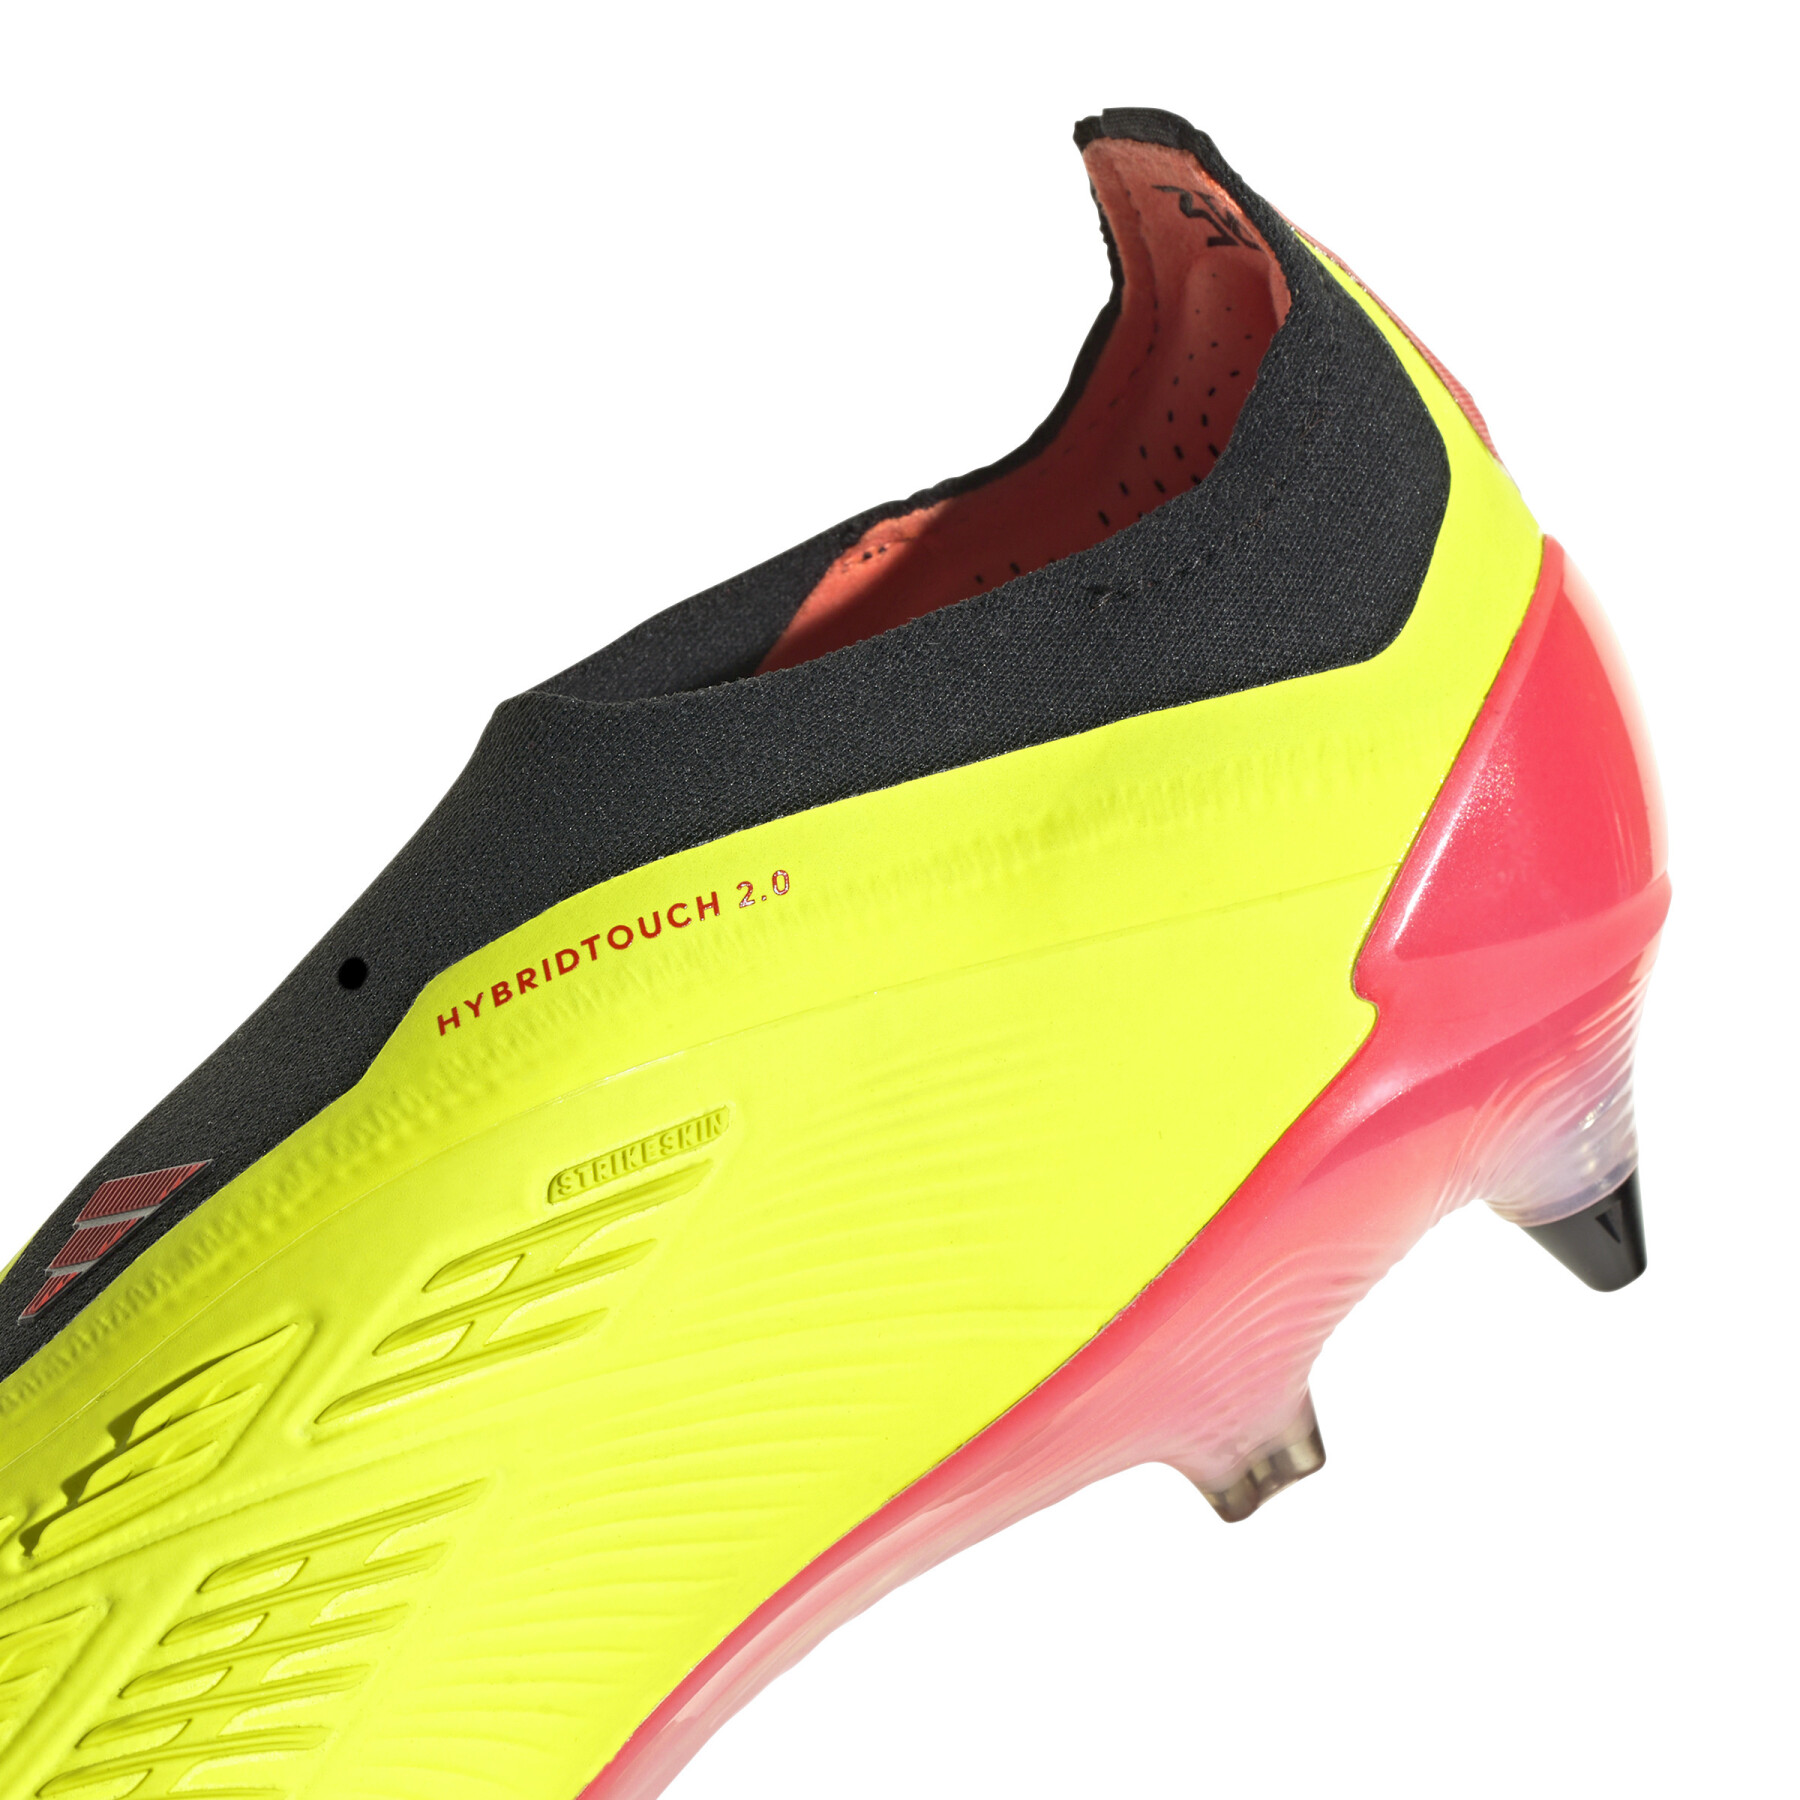 Soccer shoes adidas Predator Elite Ll SG